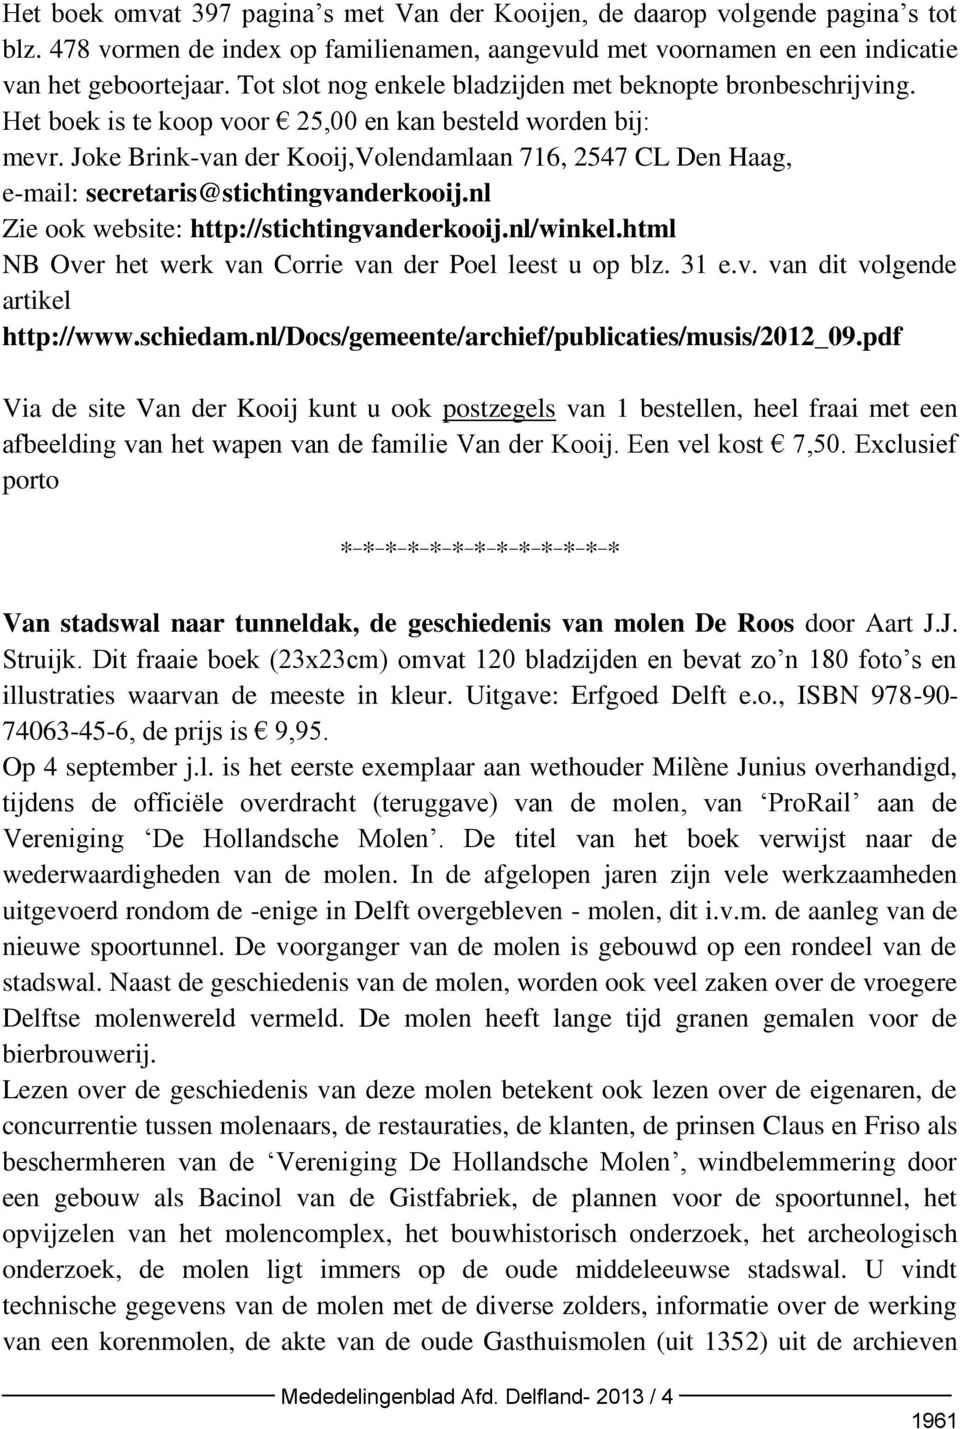 Joke Brink-van der Kooij,Volendamlaan 716, 2547 CL Den Haag, e-mail: secretaris@stichtingvanderkooij.nl Zie ook website: http://stichtingvanderkooij.nl/winkel.